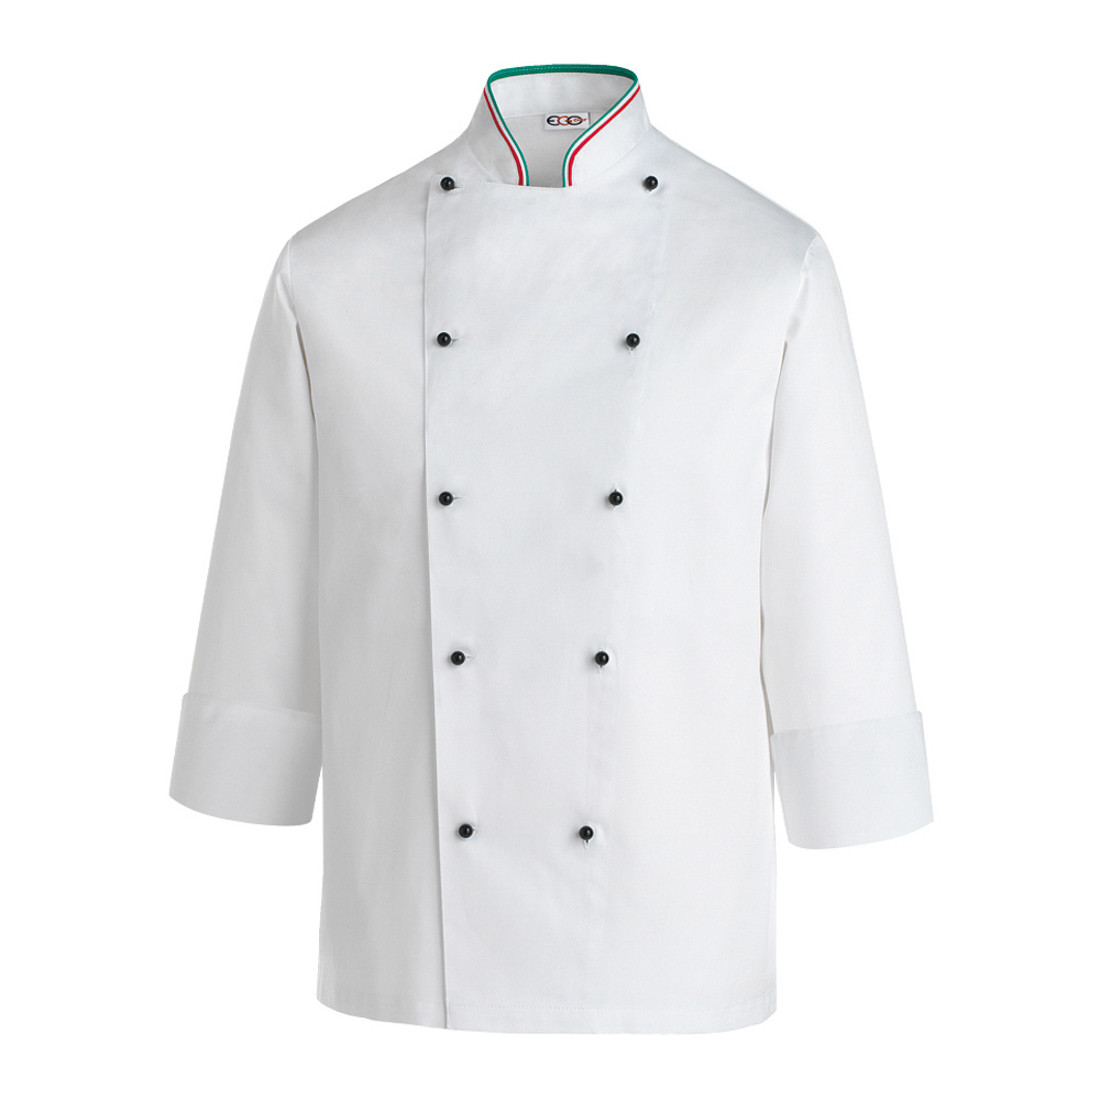 Veste Chef Security Italy - Les vêtements de protection